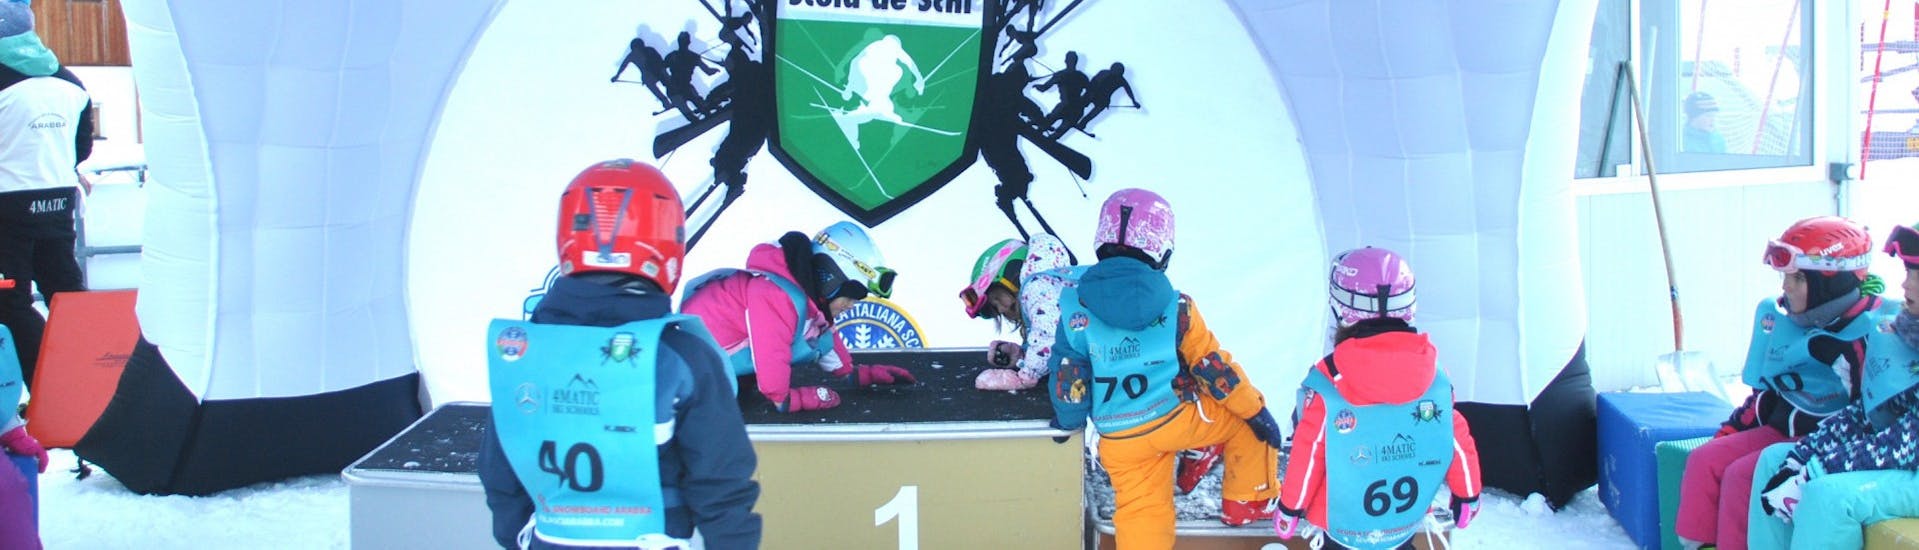 Kleine skiërs in het kindergedeelte tijdens de skilessen voor kinderen (vanaf 4 jaar) voor gevorderde skiërs - hele dag met Scuola Italiana Sci Arabba.